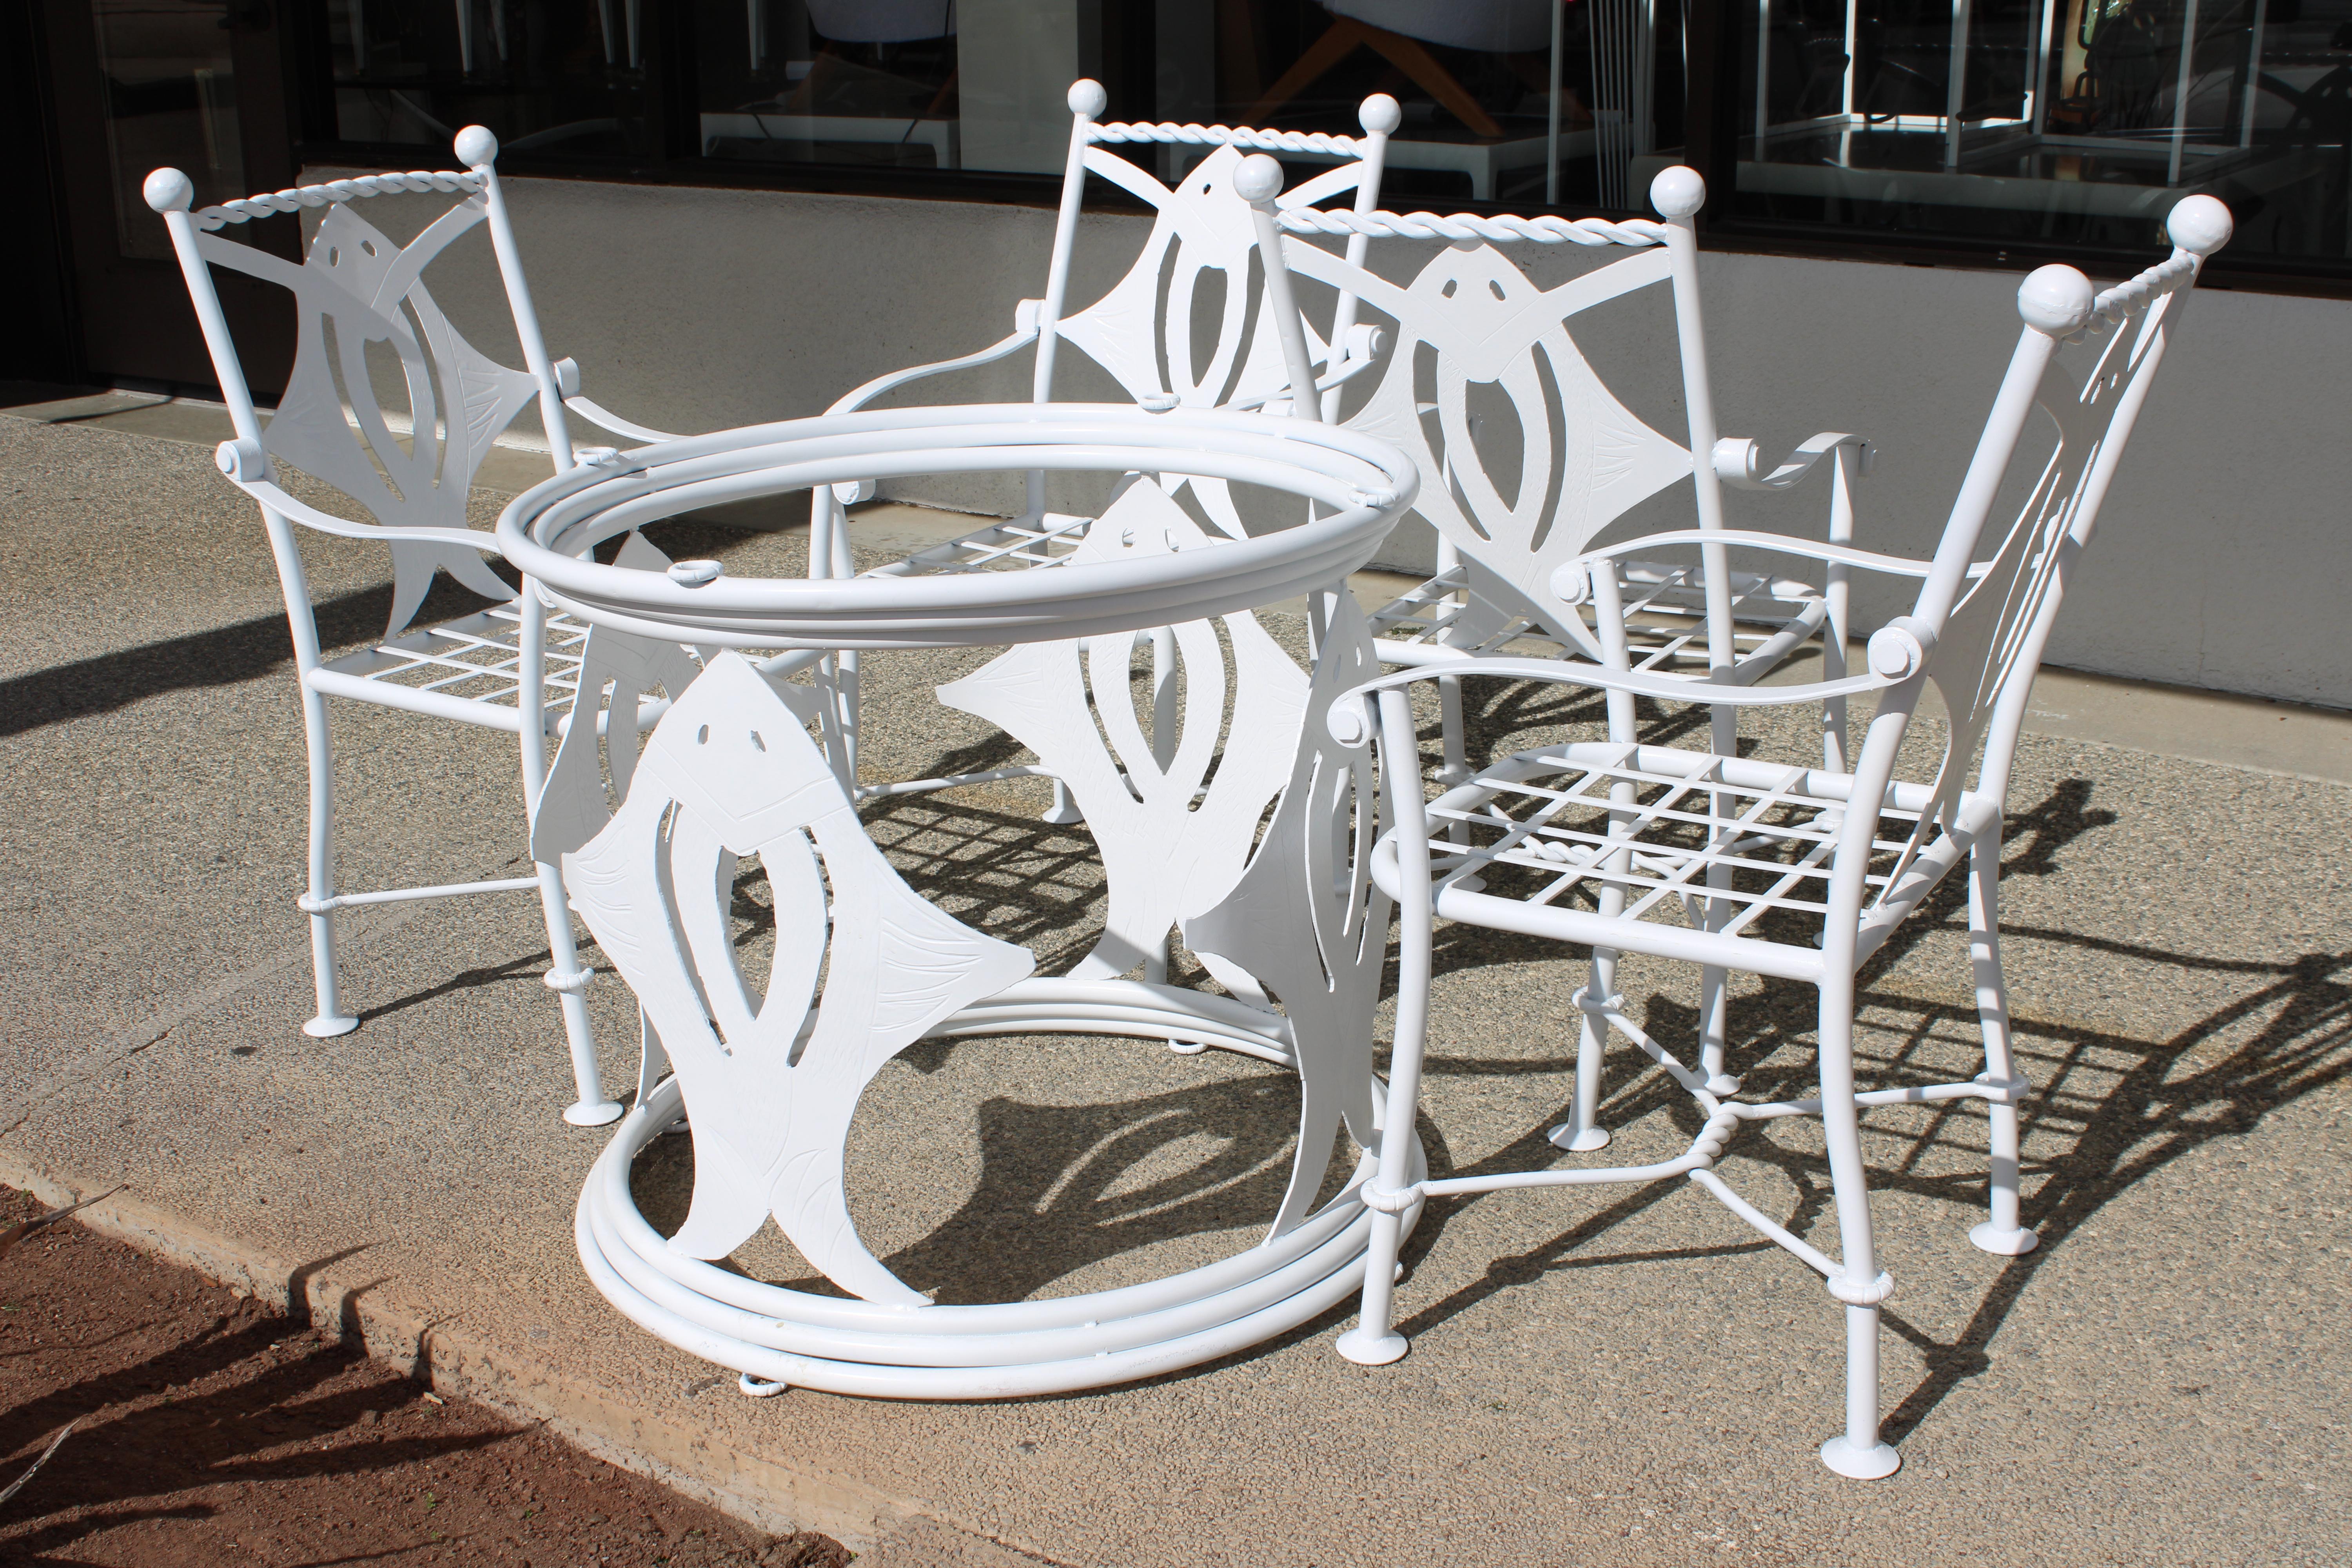 Terrassenset bestehend aus 4 Stühlen und Tisch.   Schönes Stachelrochenmotiv.  Der Tisch ist 28,5